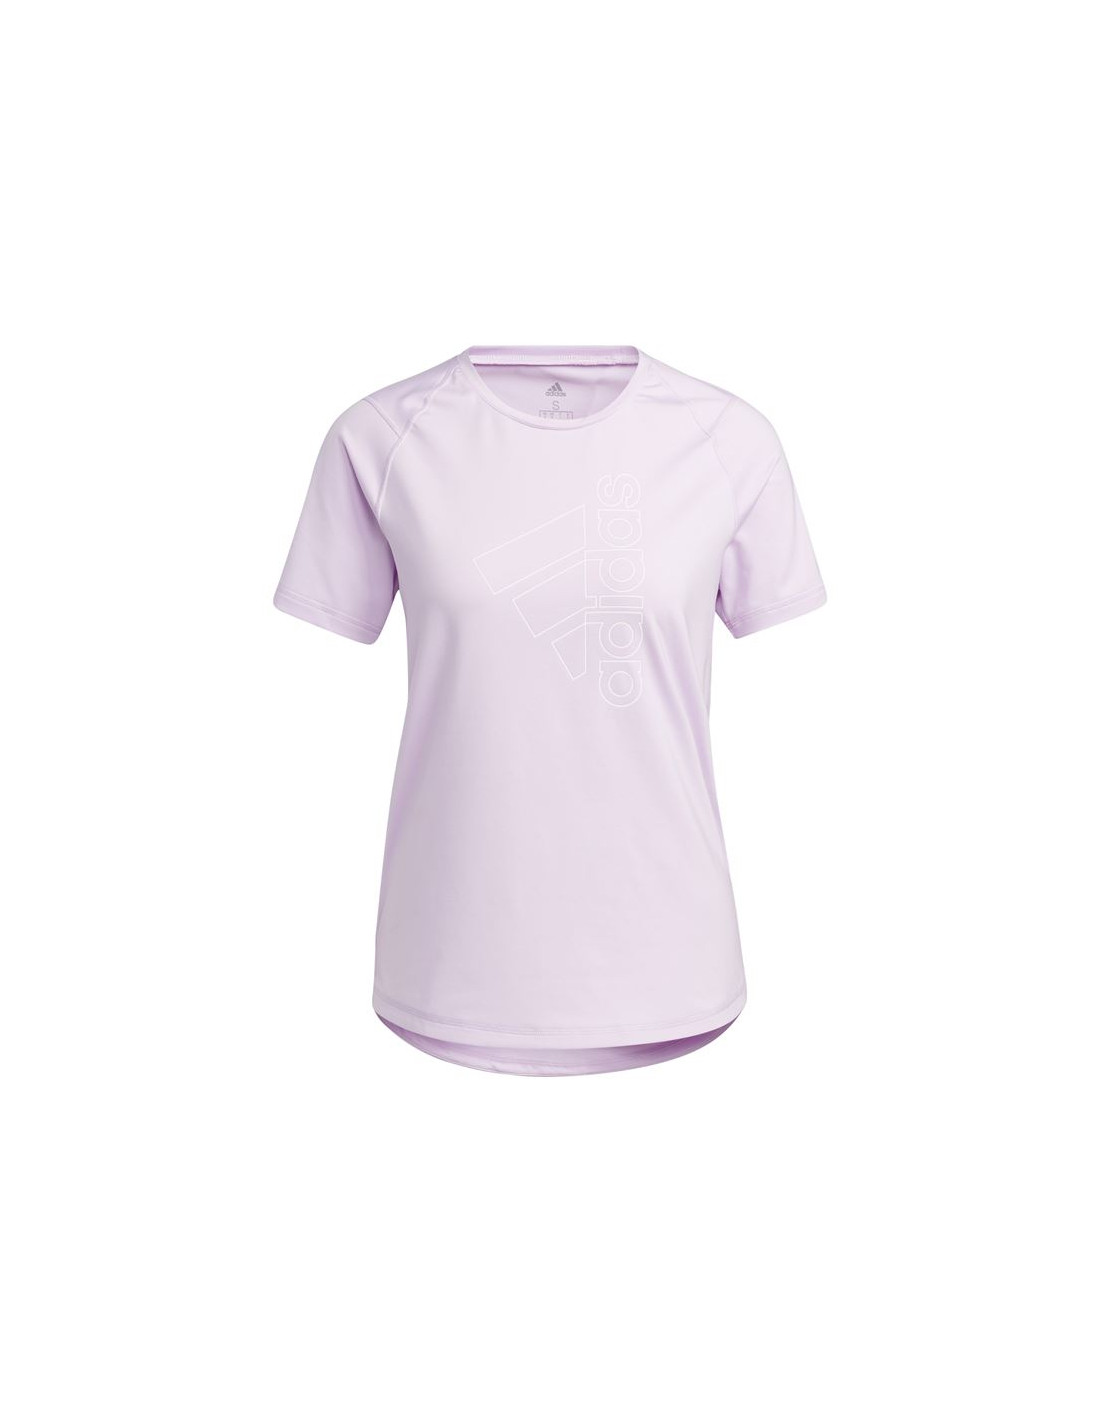 Camiseta de training adidas badge of sport rosa